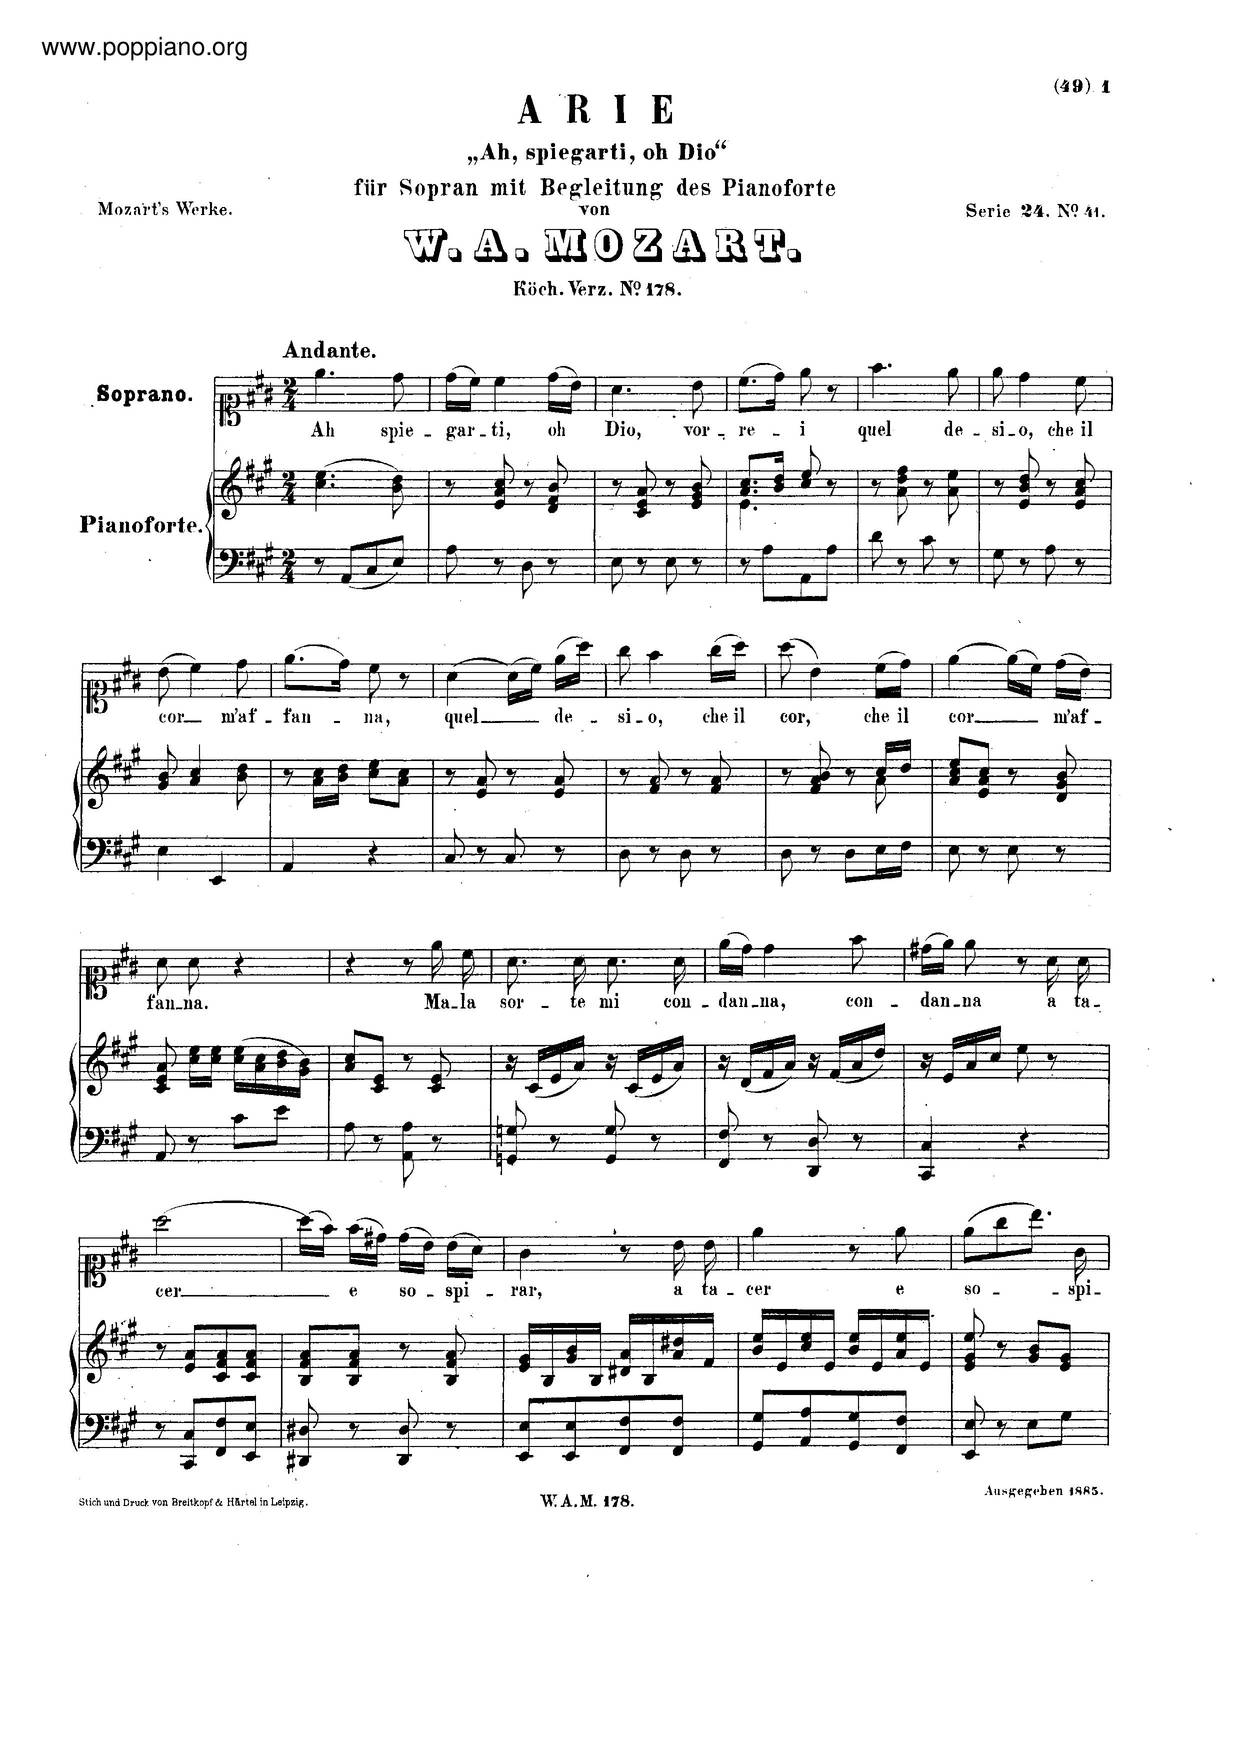 Ah, Spiegarti, O Dio, K. 178/417E Score